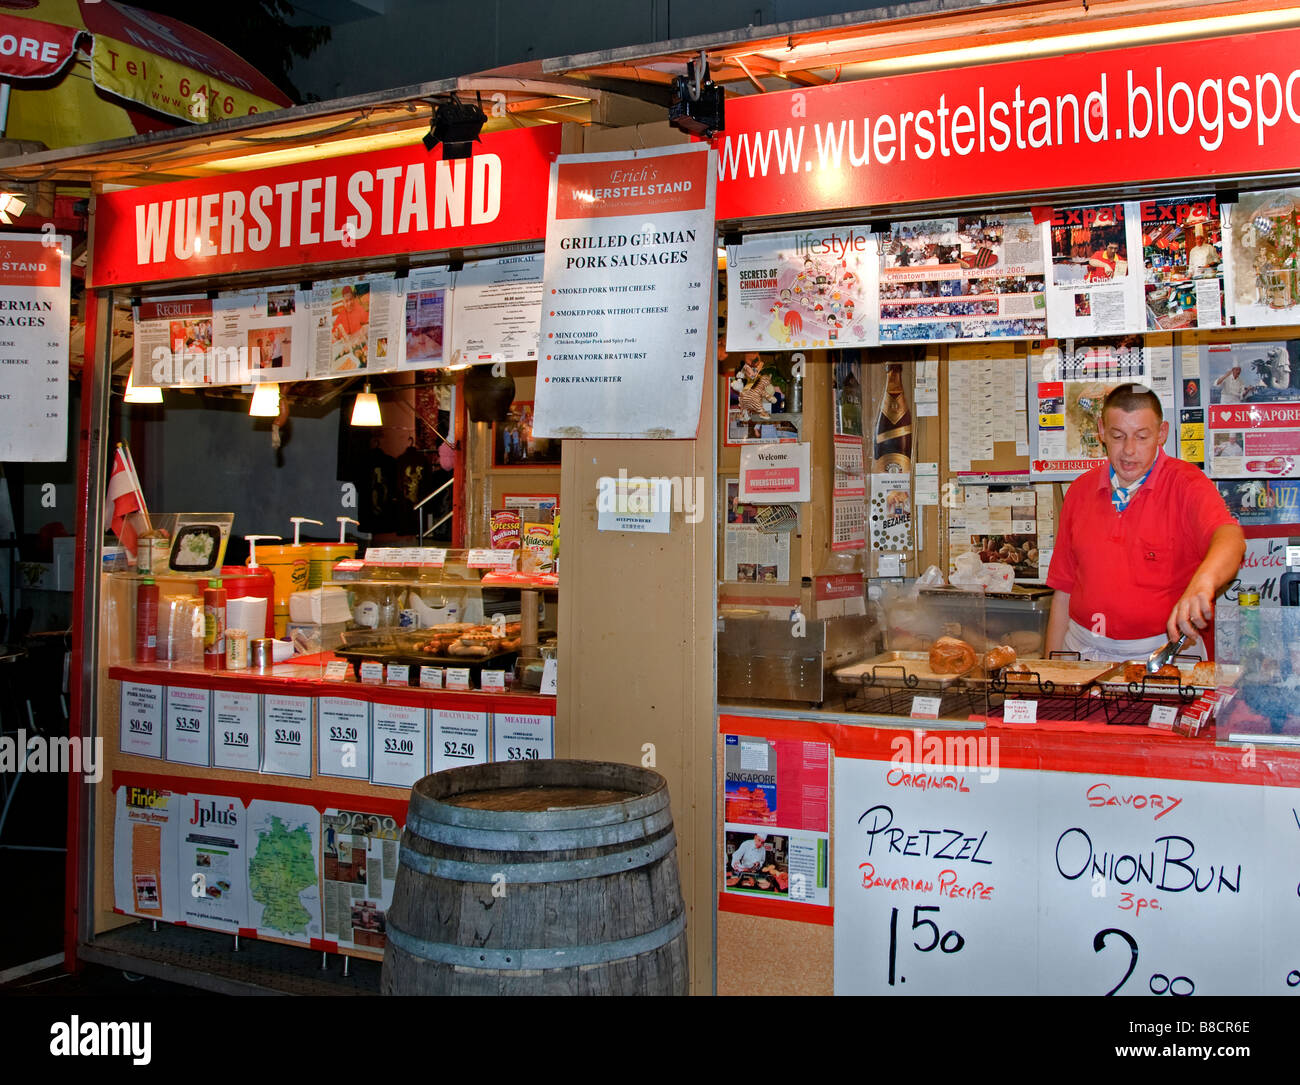 Bratwurst führt Chinatown China chinesische Nacht Markt Zentrum Innenstadt deutsche Deutschland gegrillt gebratene Fleischwurst Stockfoto